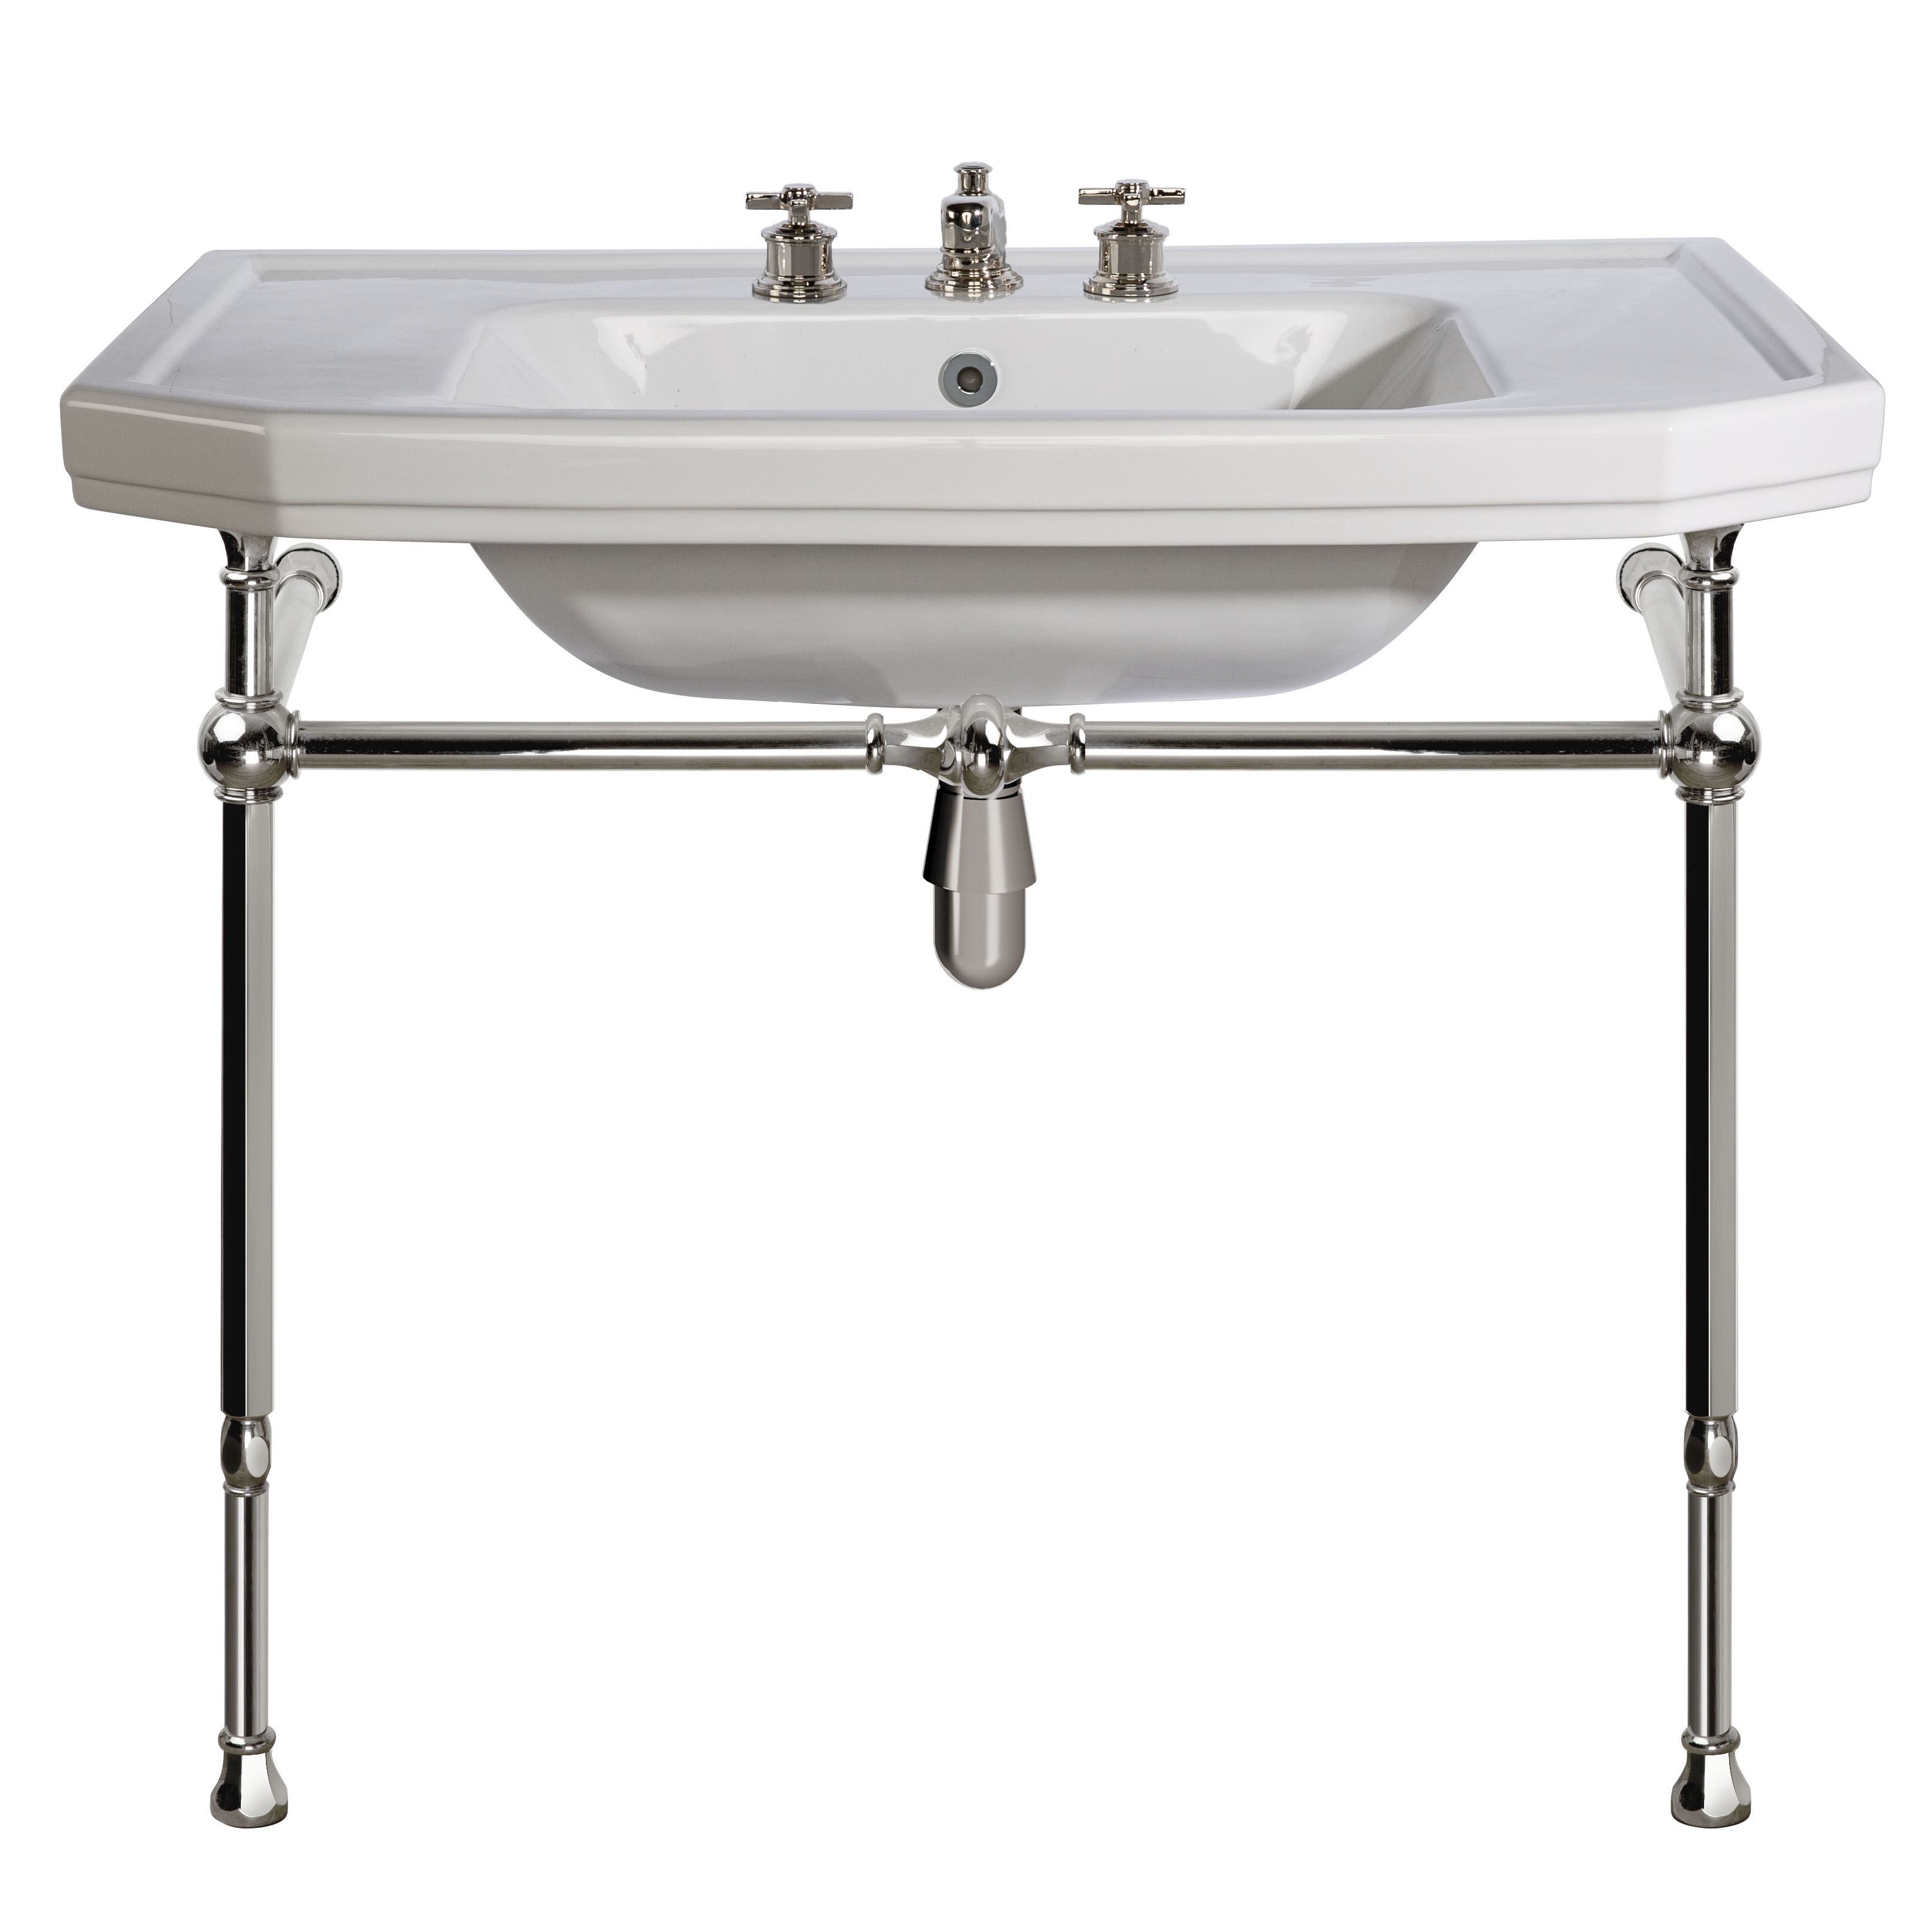 MS13-92-pietement-laiton Biarritz washbasin on brass washstand, L. 92cm